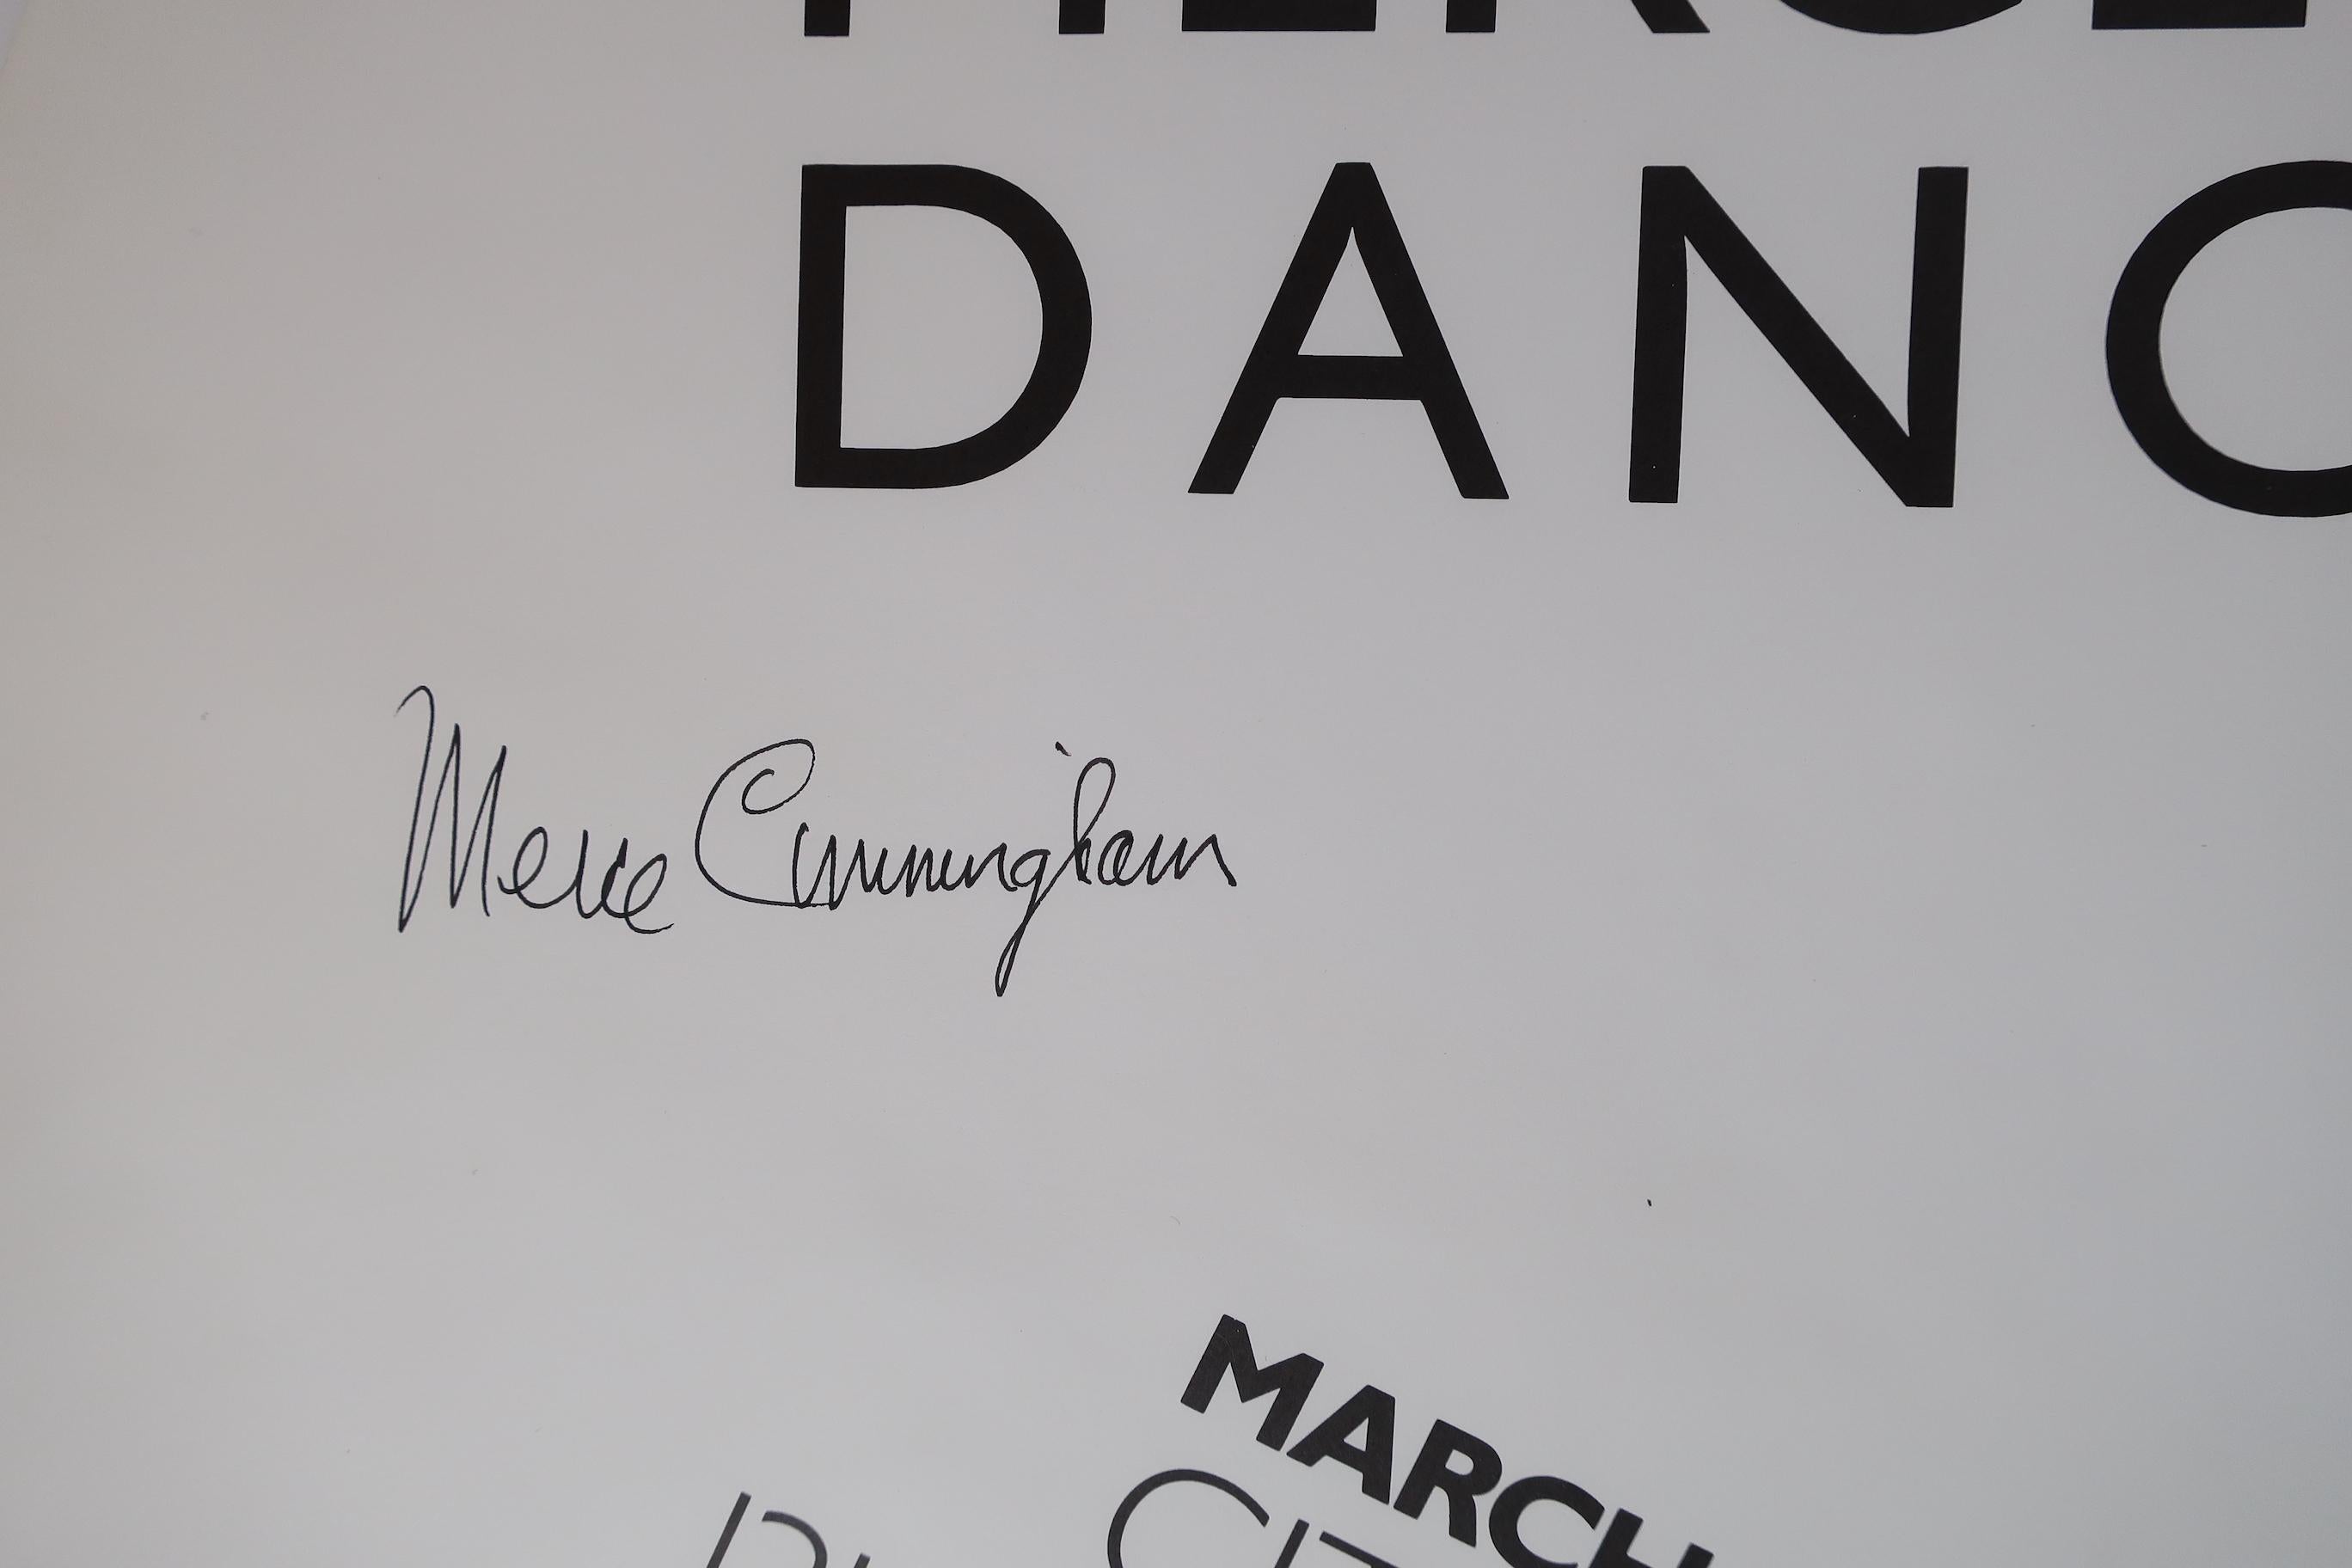 Merce Cunningham Dance Company
